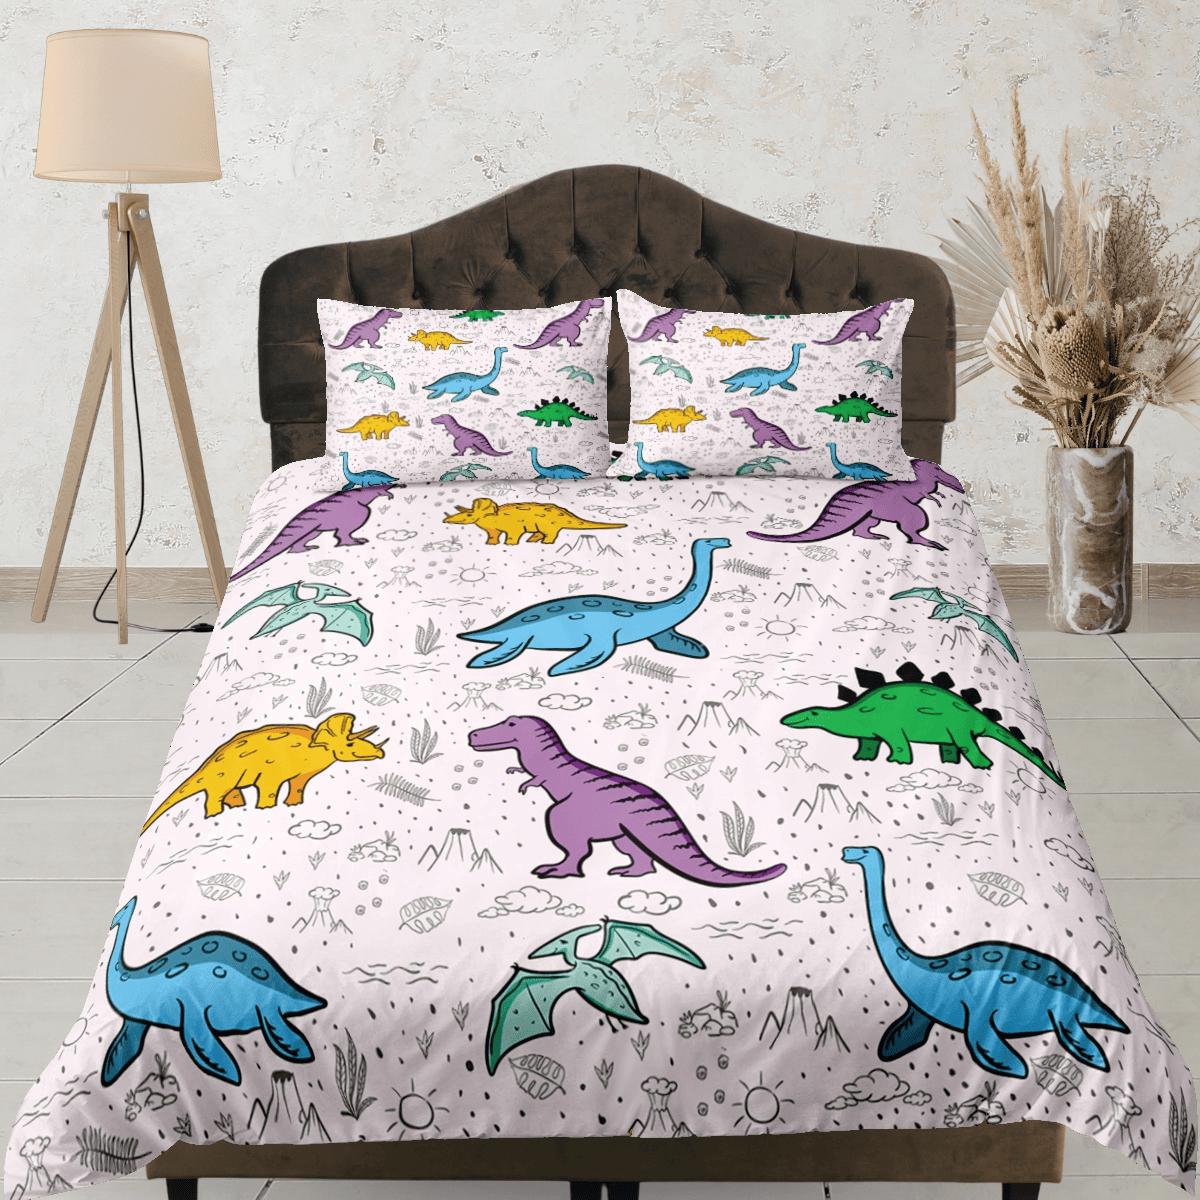 daintyduvet Lavender purple dinosaur bedding, kids bedding full, cute duvet cover set, nursery bed decor, colorful bedding, baby dinosaur, toddler